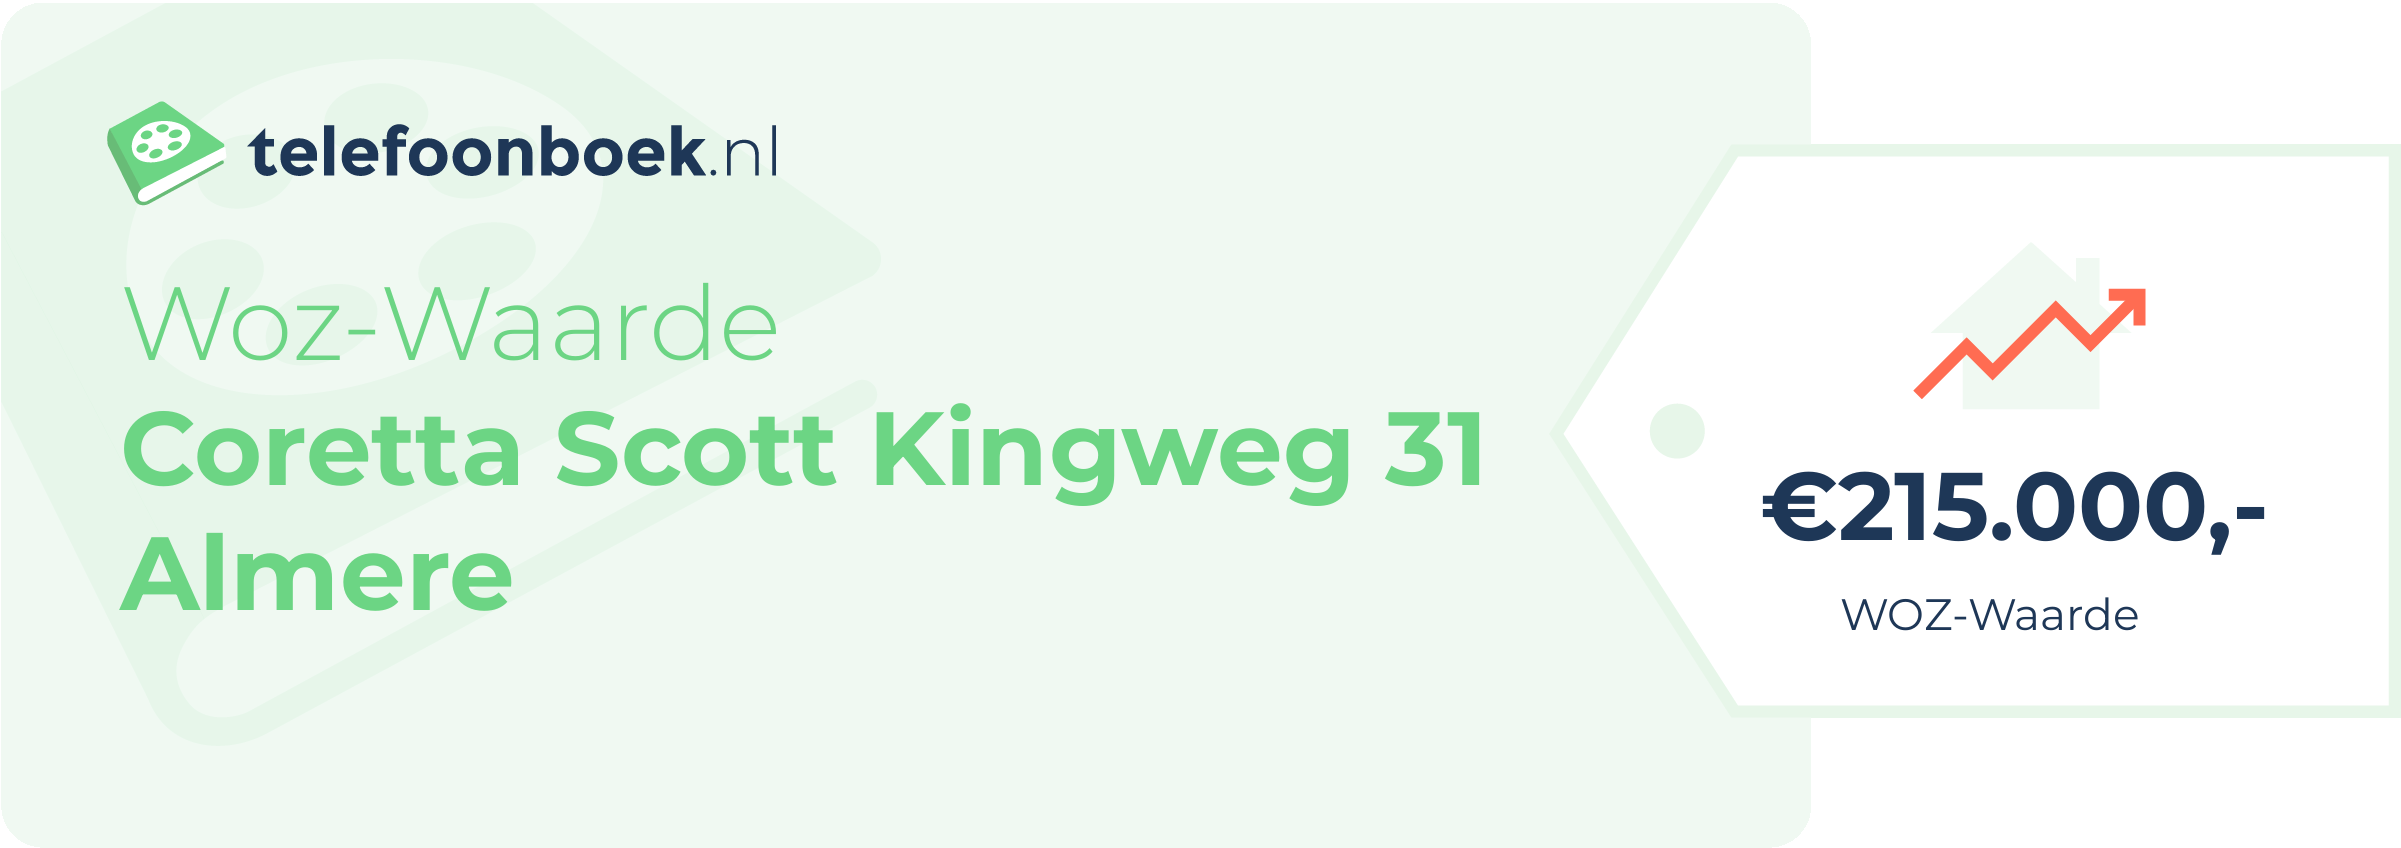 WOZ-waarde Coretta Scott Kingweg 31 Almere